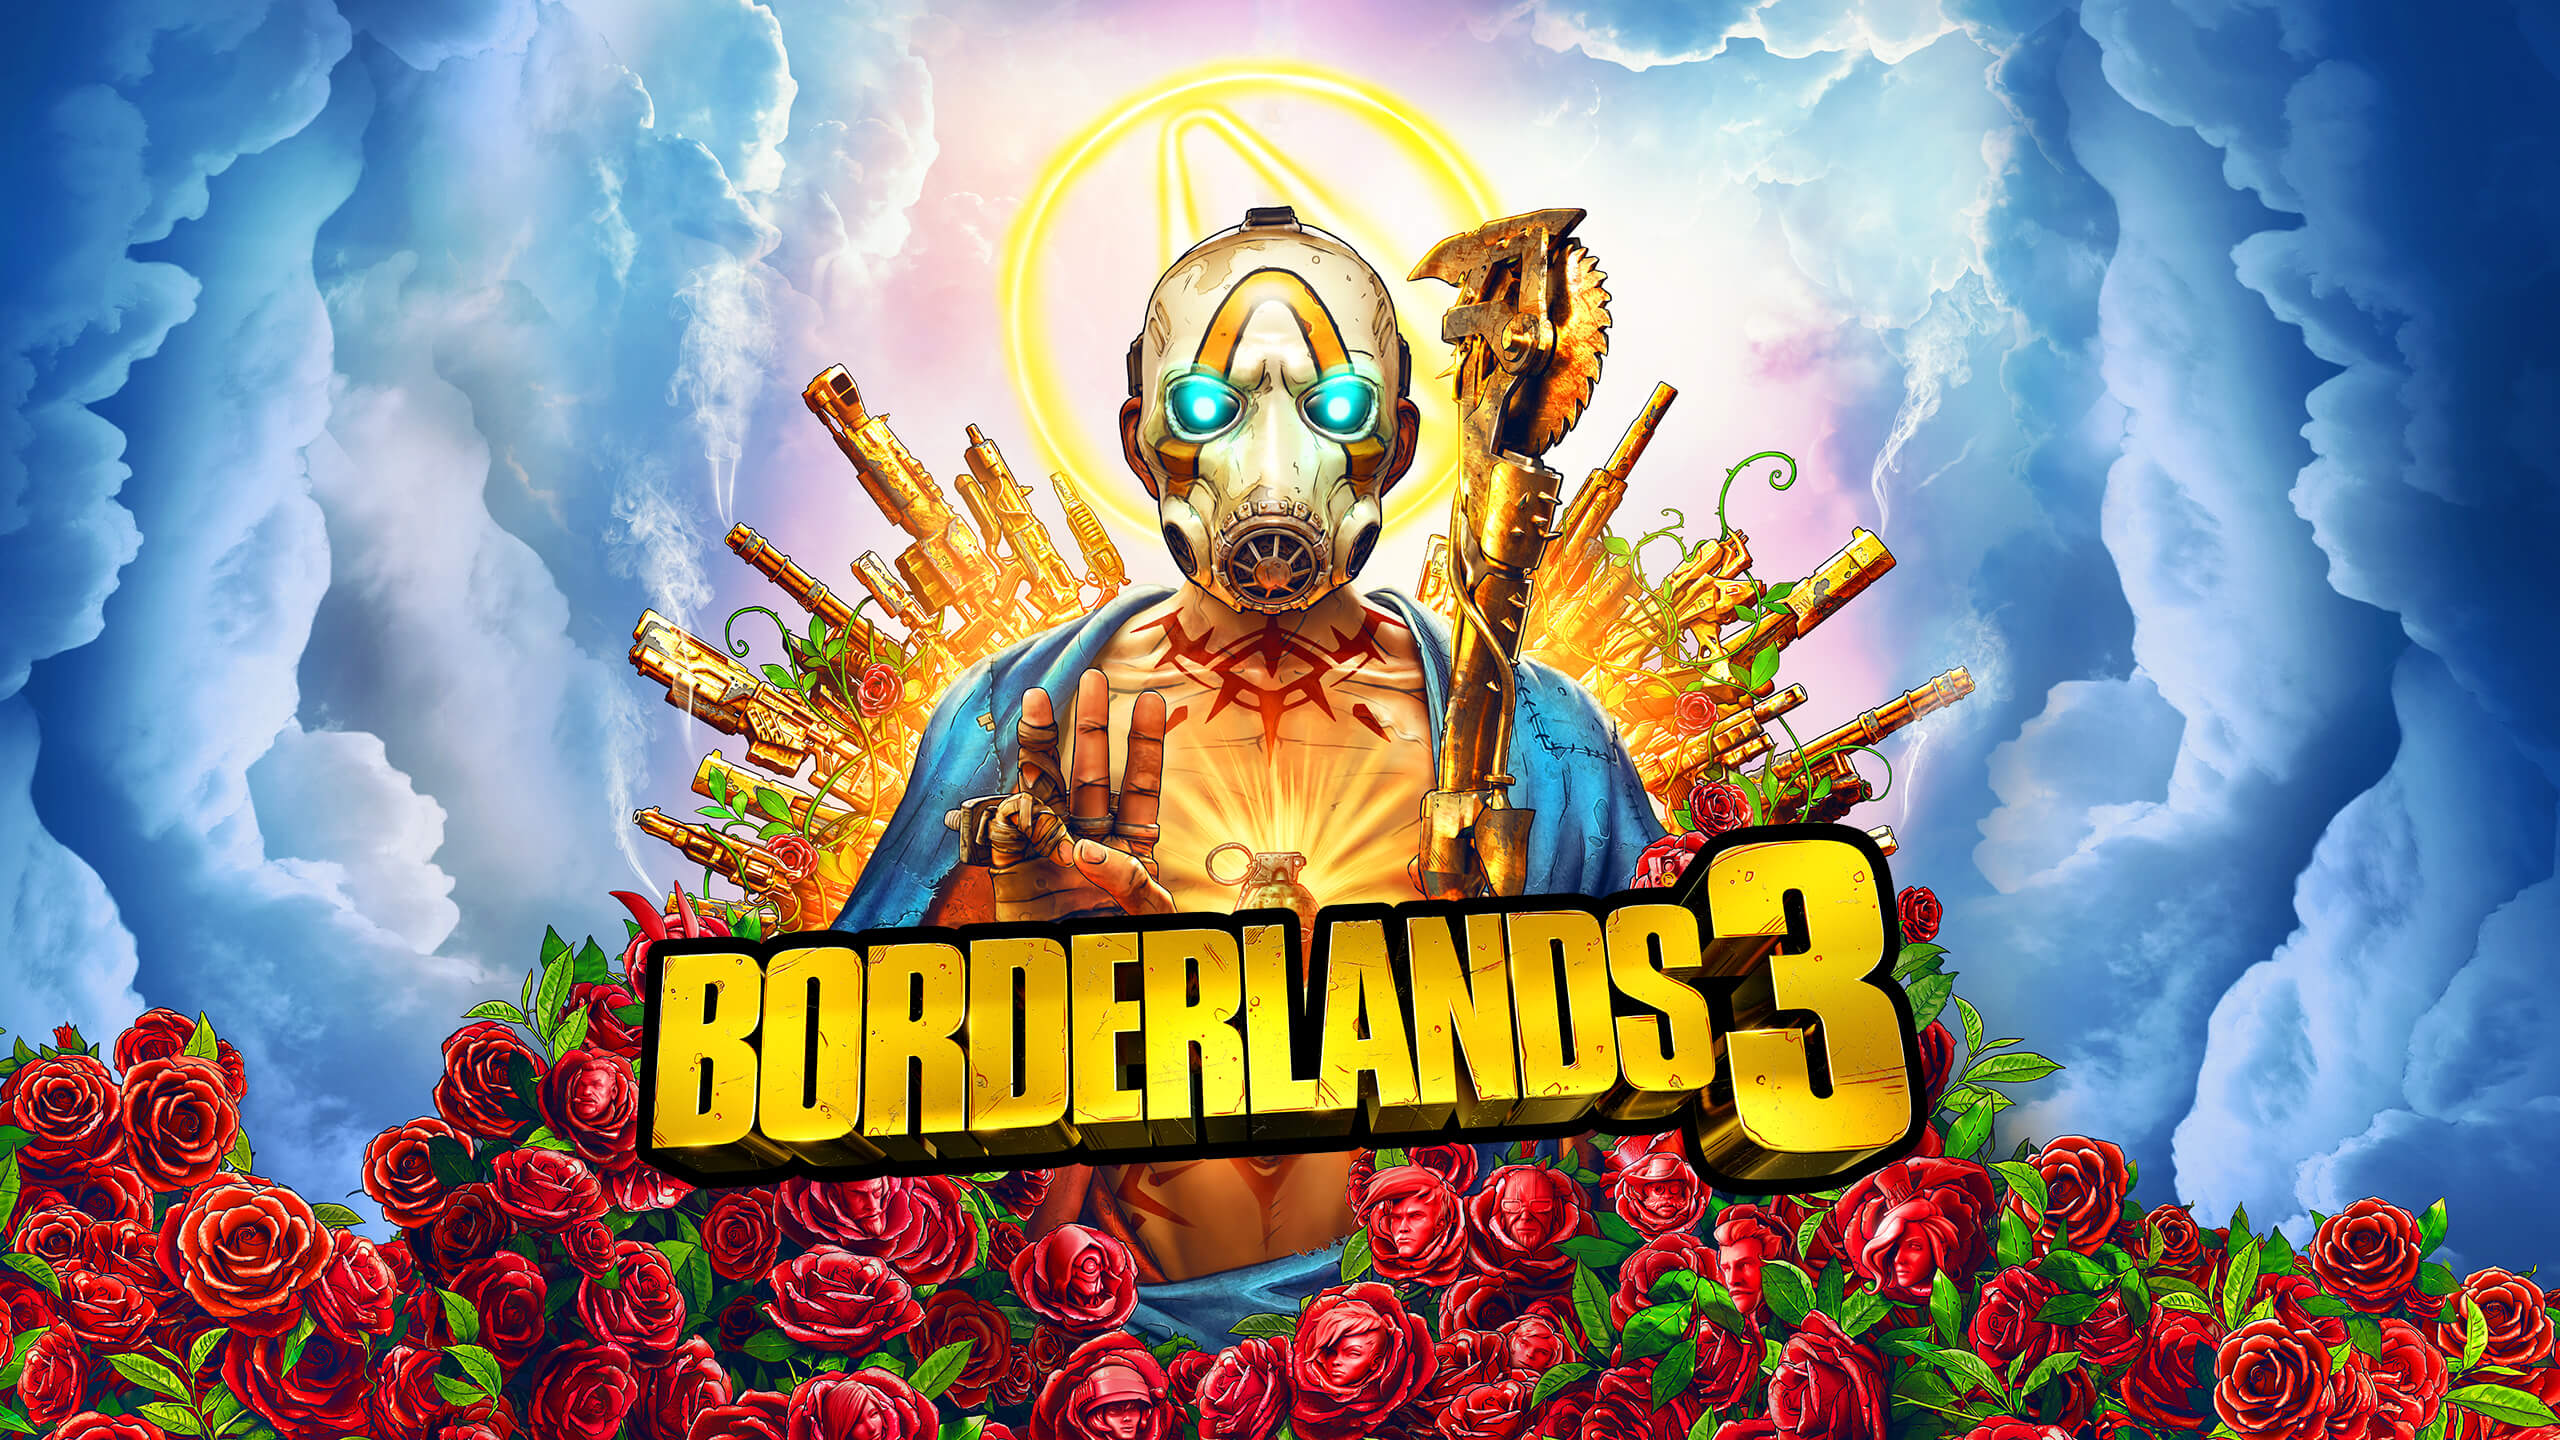 Borderlands 3 shooter genre